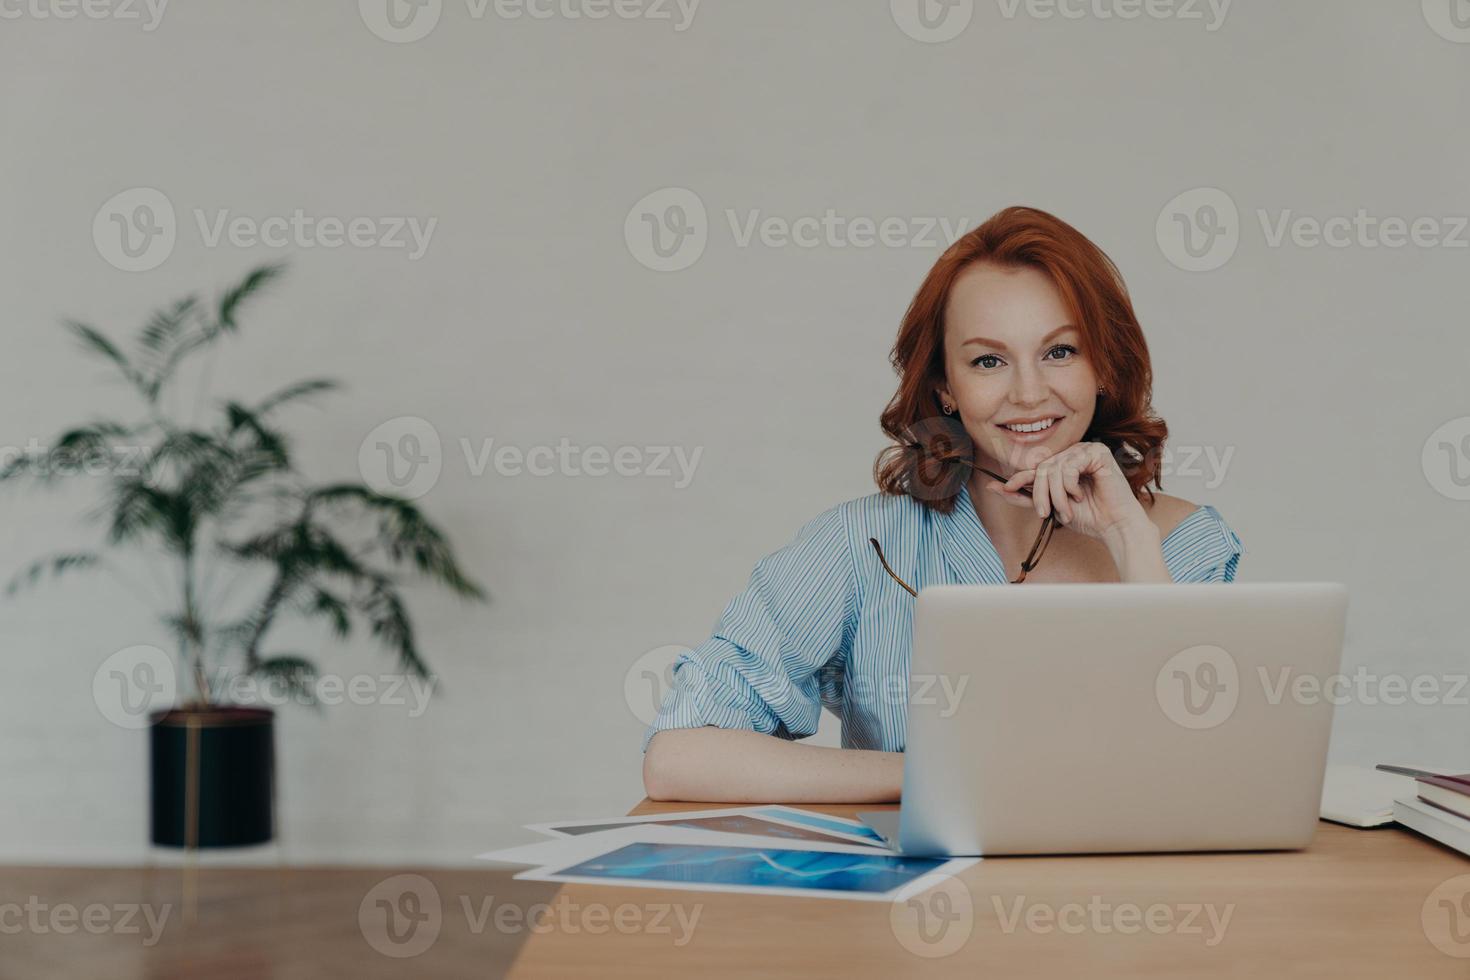 une femme entrepreneure joyeuse et rusée discute en ligne avec des partenaires commerciaux, travaille sur un projet de démarrage, pose sur le lieu de travail, entourée de documents papier, d'un mur blanc et d'une fleur en pot en arrière-plan photo